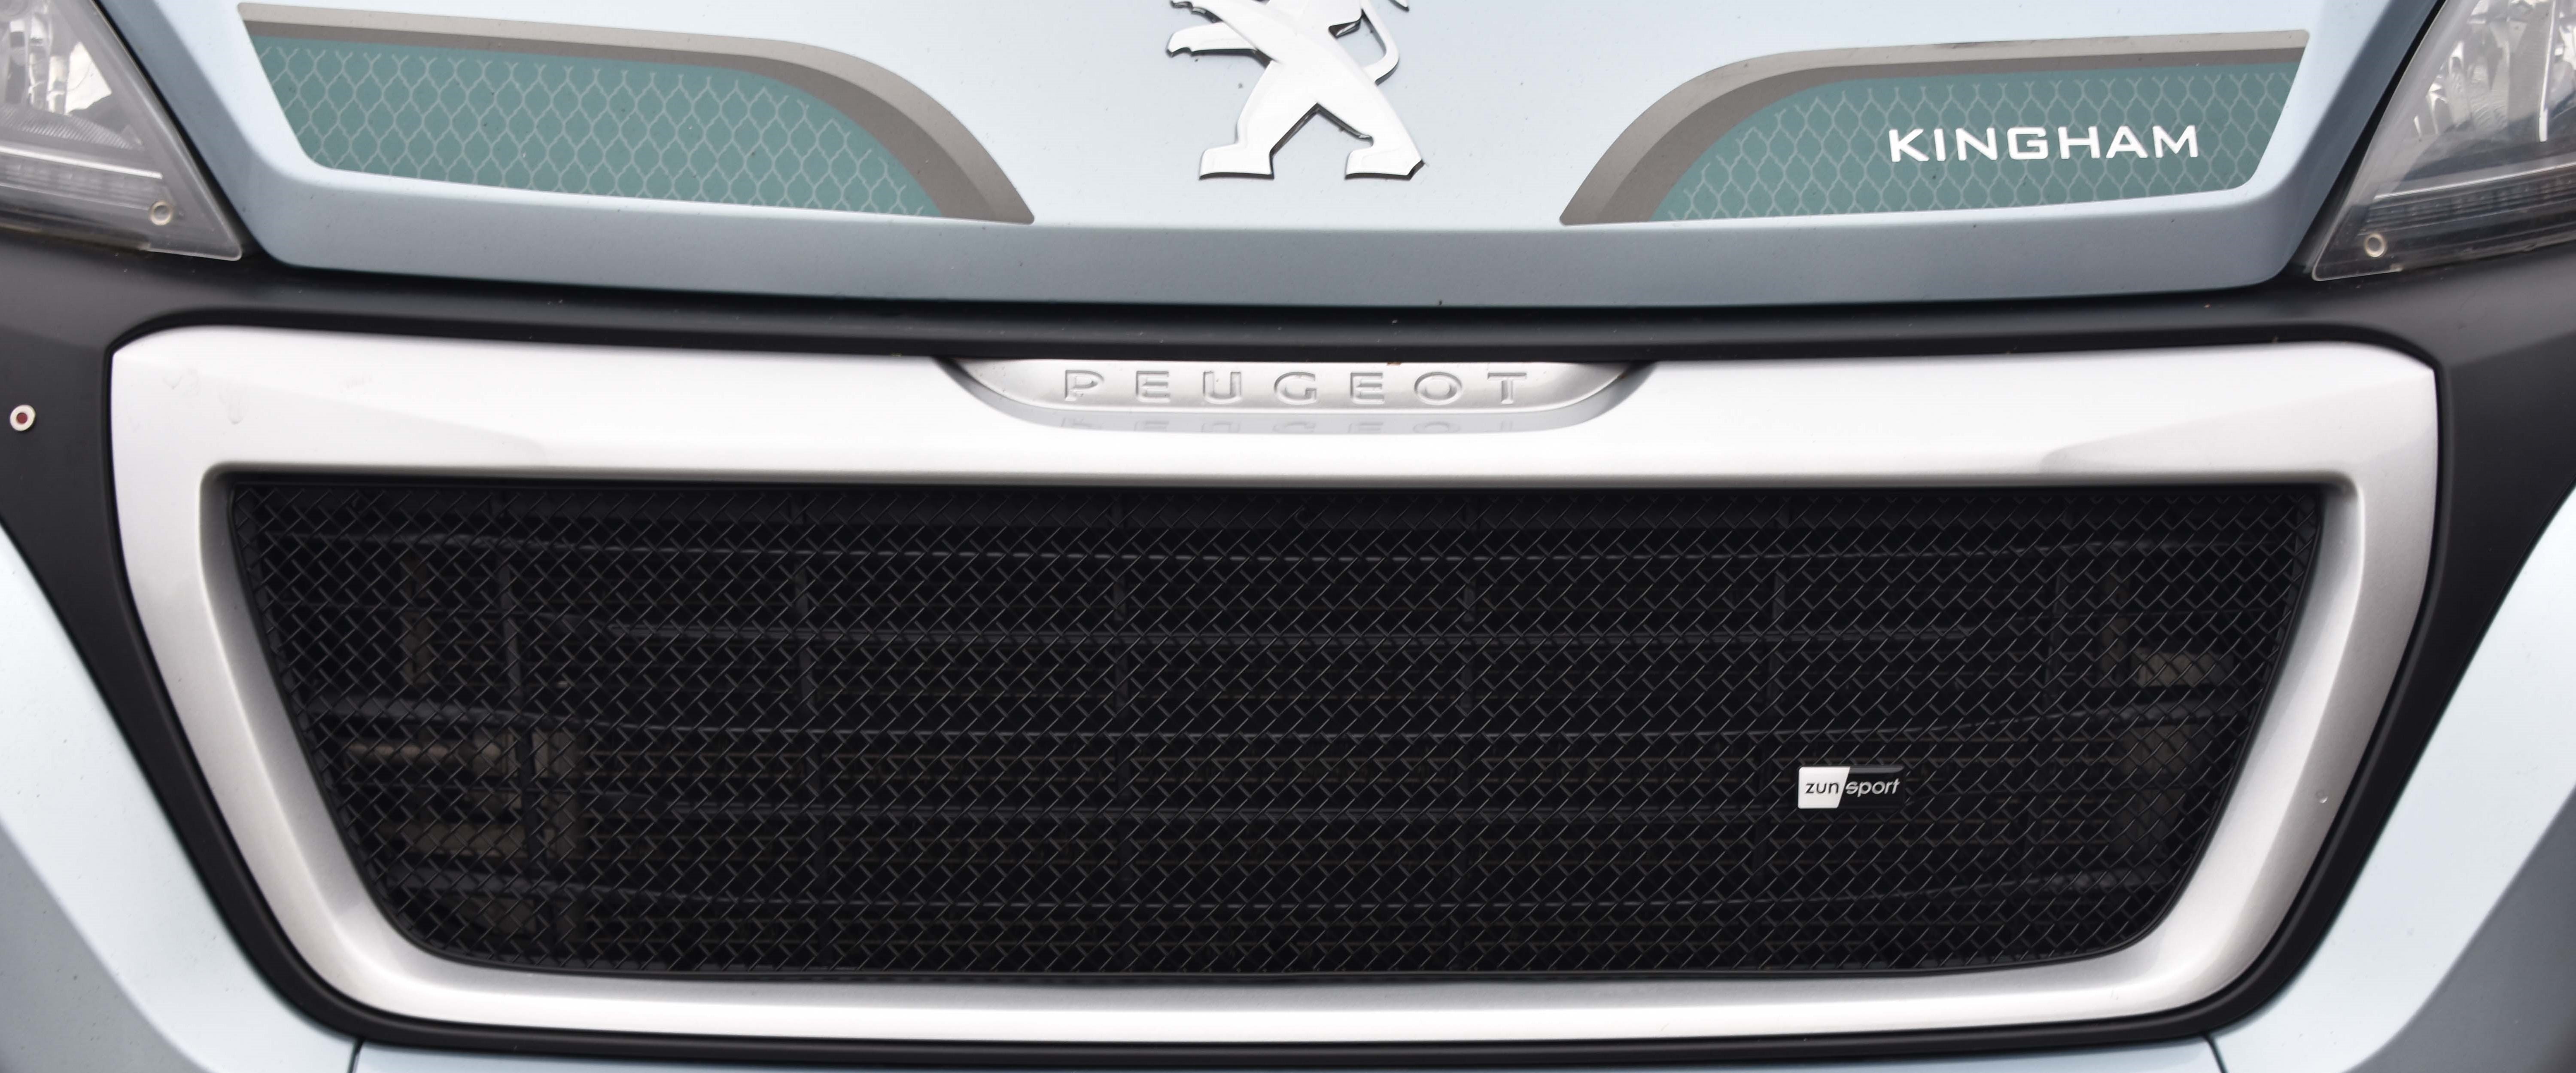 Zunsport Peugeot Boxer Facelift 2014 - Upper Grille Black